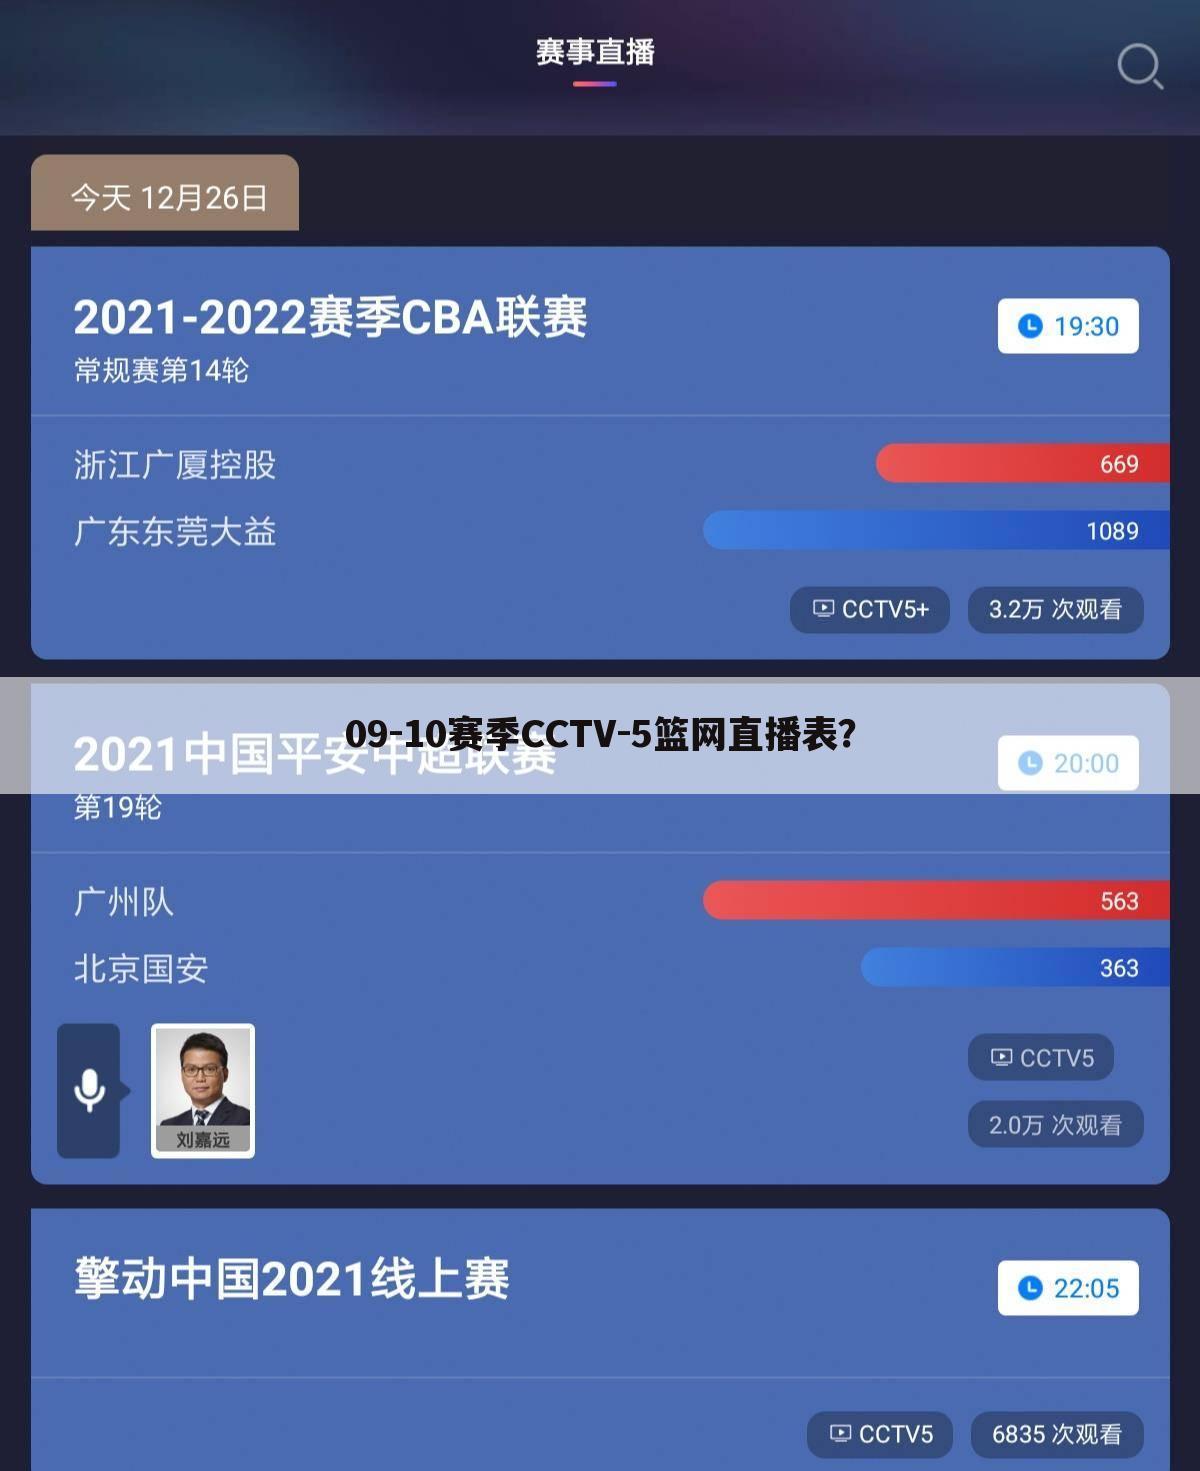 09-10赛季CCTV-5篮网直播表？